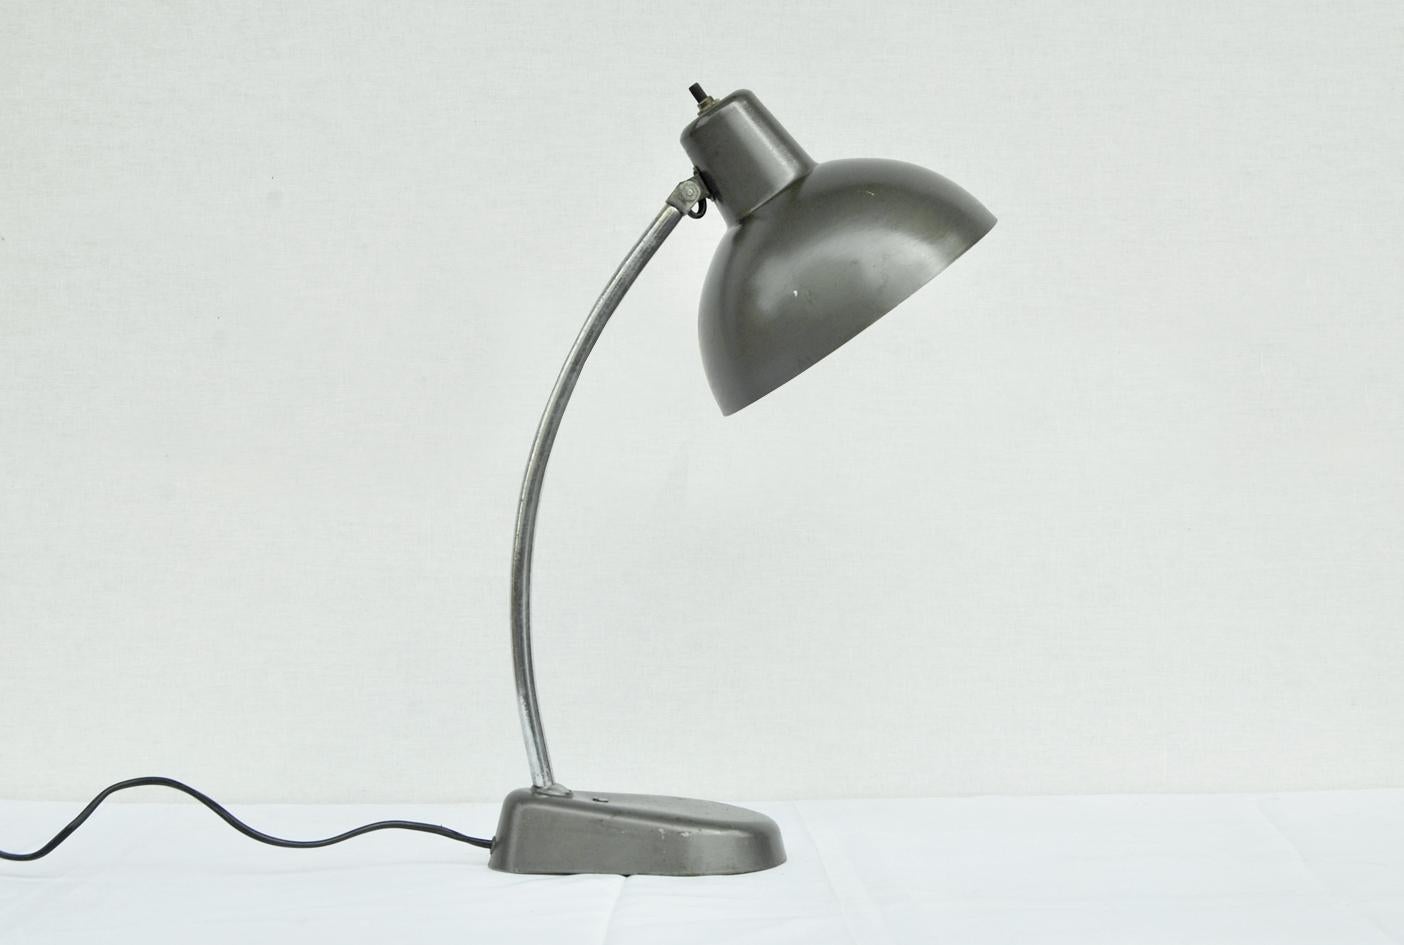 Lampe ministérielle ancienne des années 1940
Produite en Italie dans la première moitié du XXe siècle, cette belle lampe ministérielle est articulée,  a été construite en métal chromé et peinte en gris. Sa particularité réside dans le commutateur